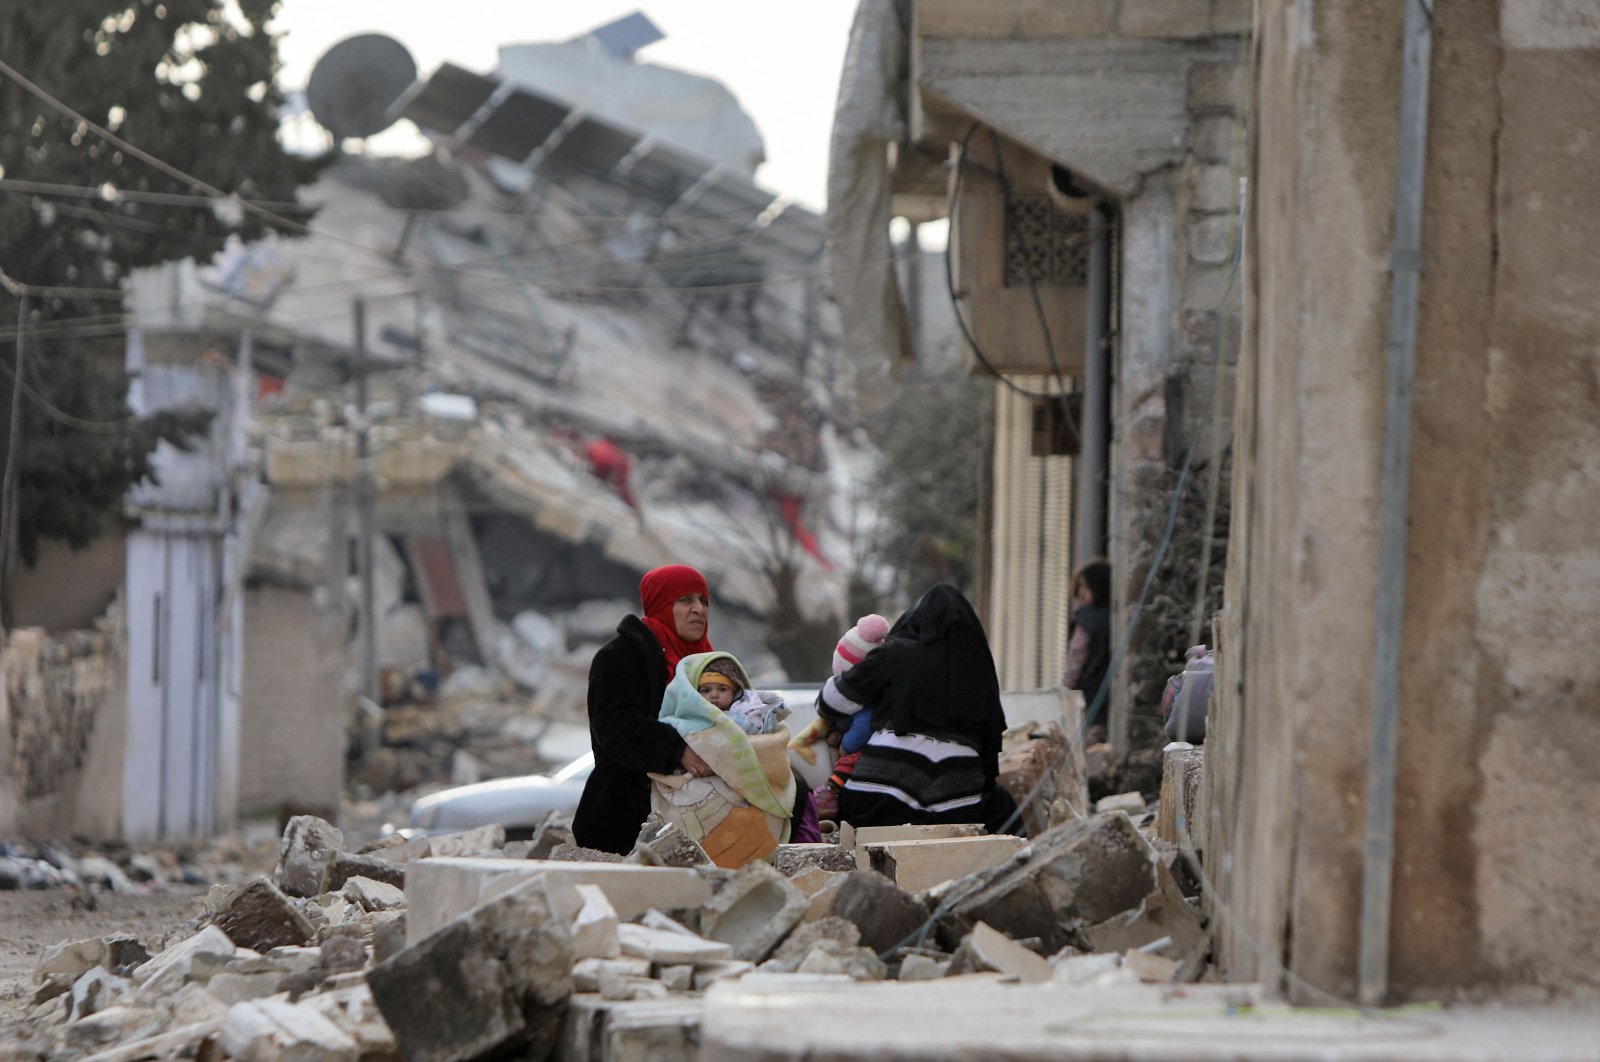 Bencana gempa memperburuk rasa sakit bagi wanita Suriah yang lelah perang